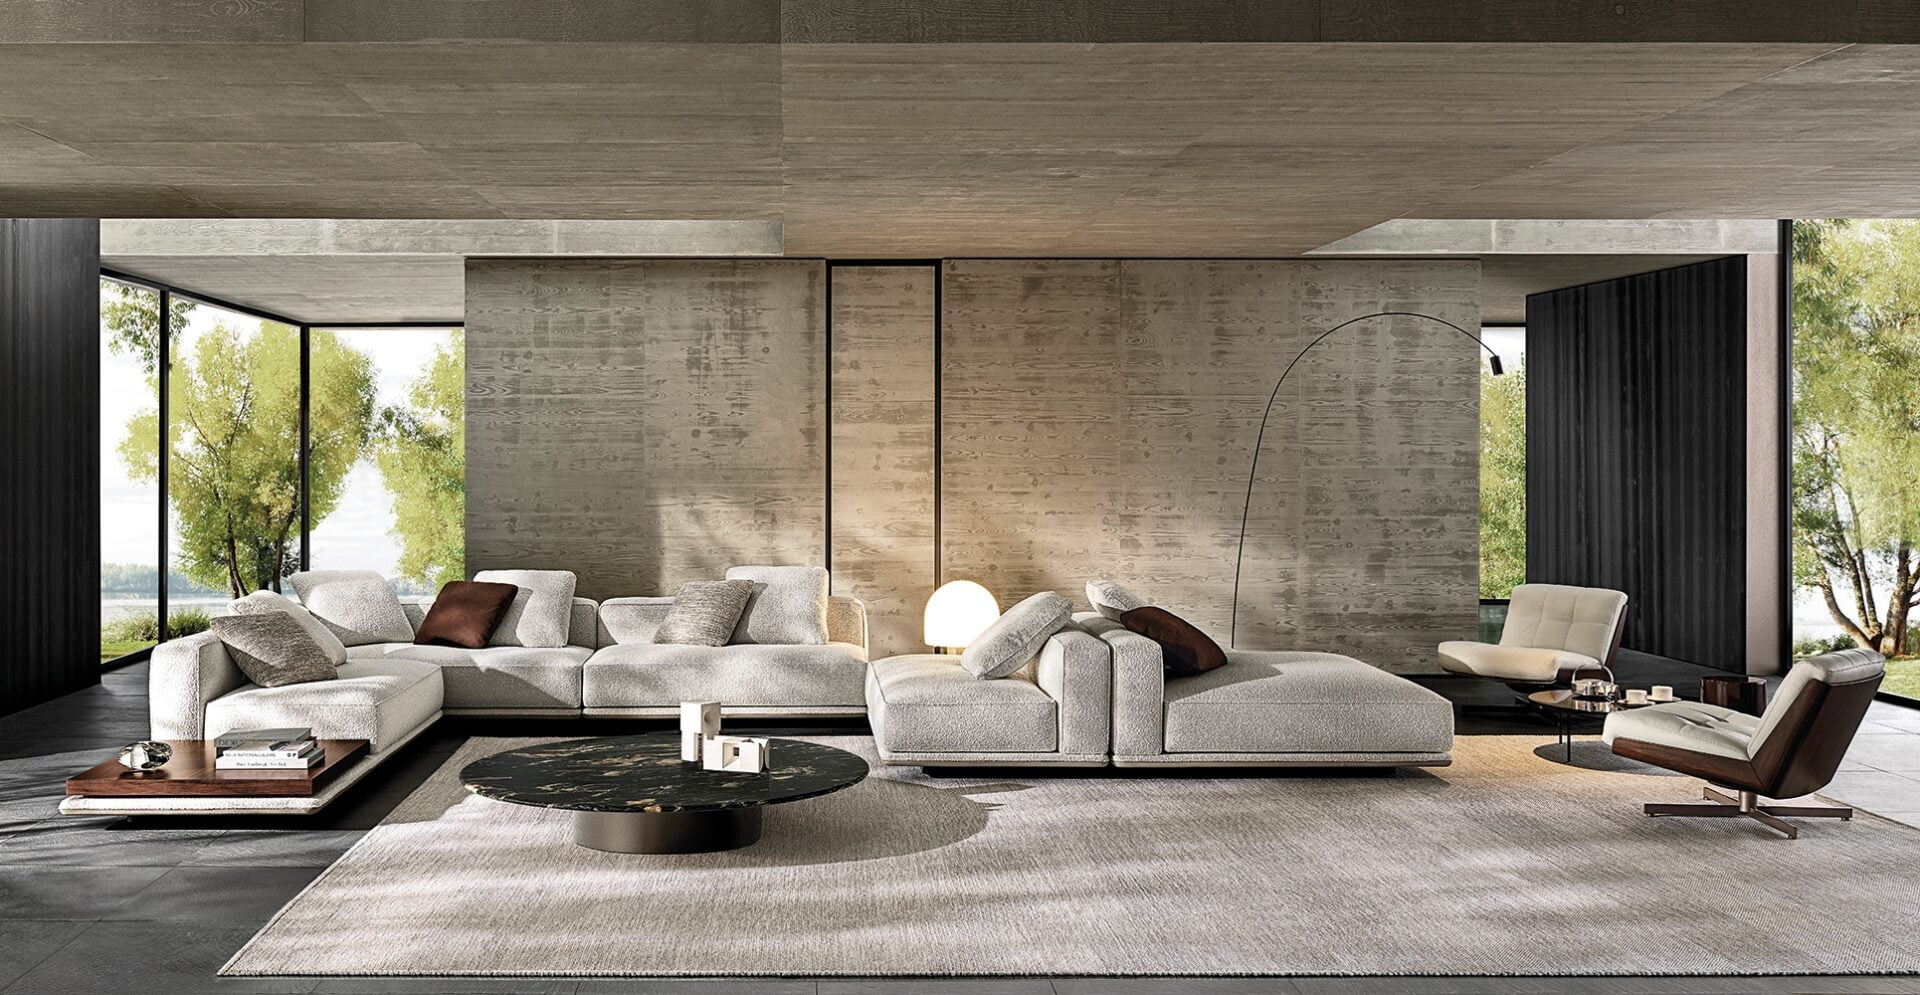 Minotti Horrizonte in lichte stof gecombineerd met Daiki fauteuils groot kleed en betonnen muur op de achtergrond